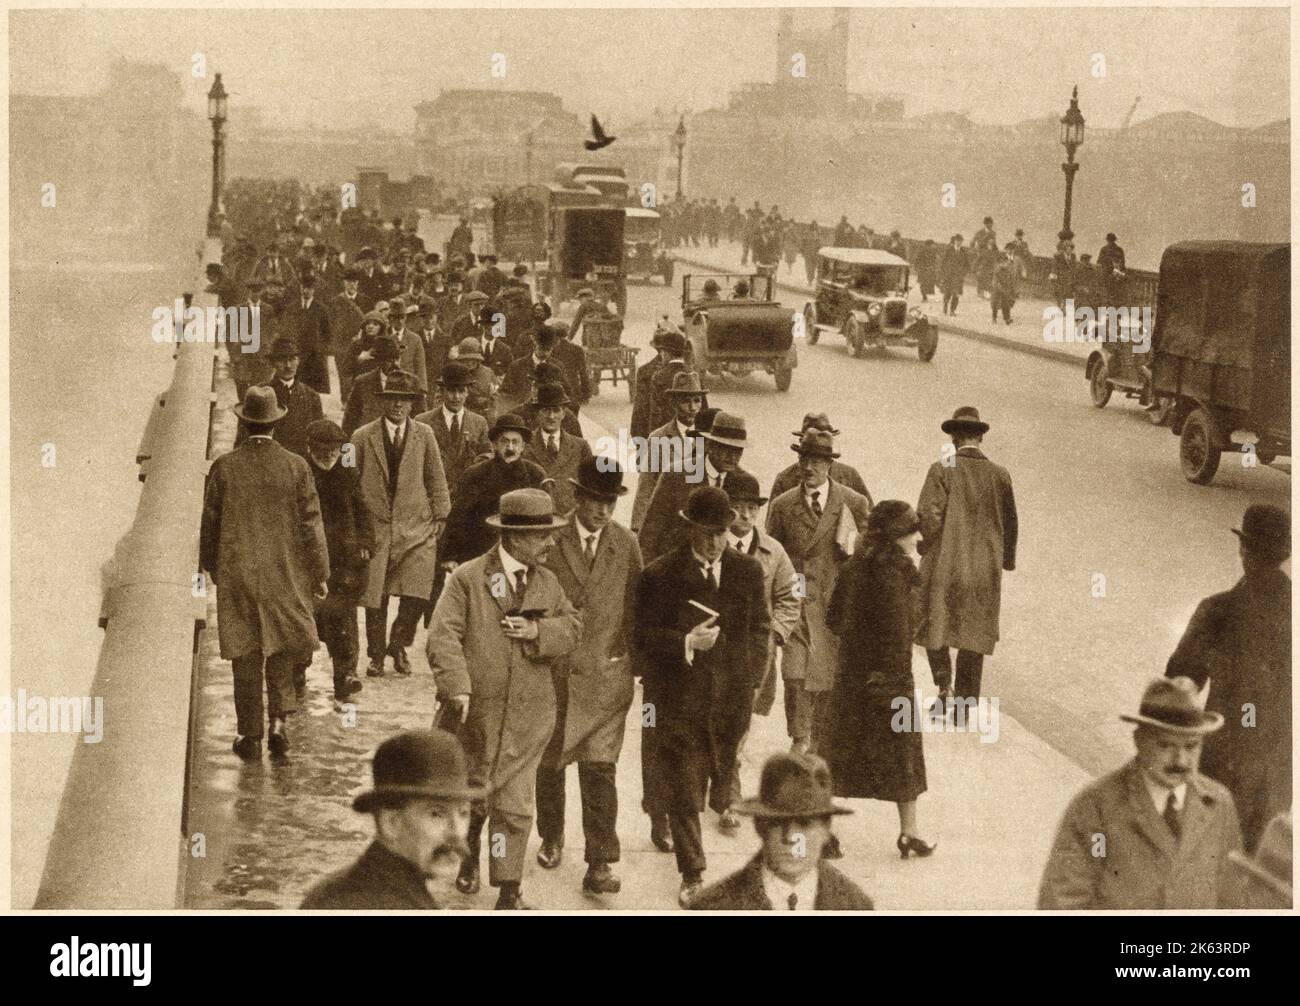 Montagmorgen Rush Hour mit vielen Leuten, die über die London Bridge laufen. Datum: 1935 Stockfoto